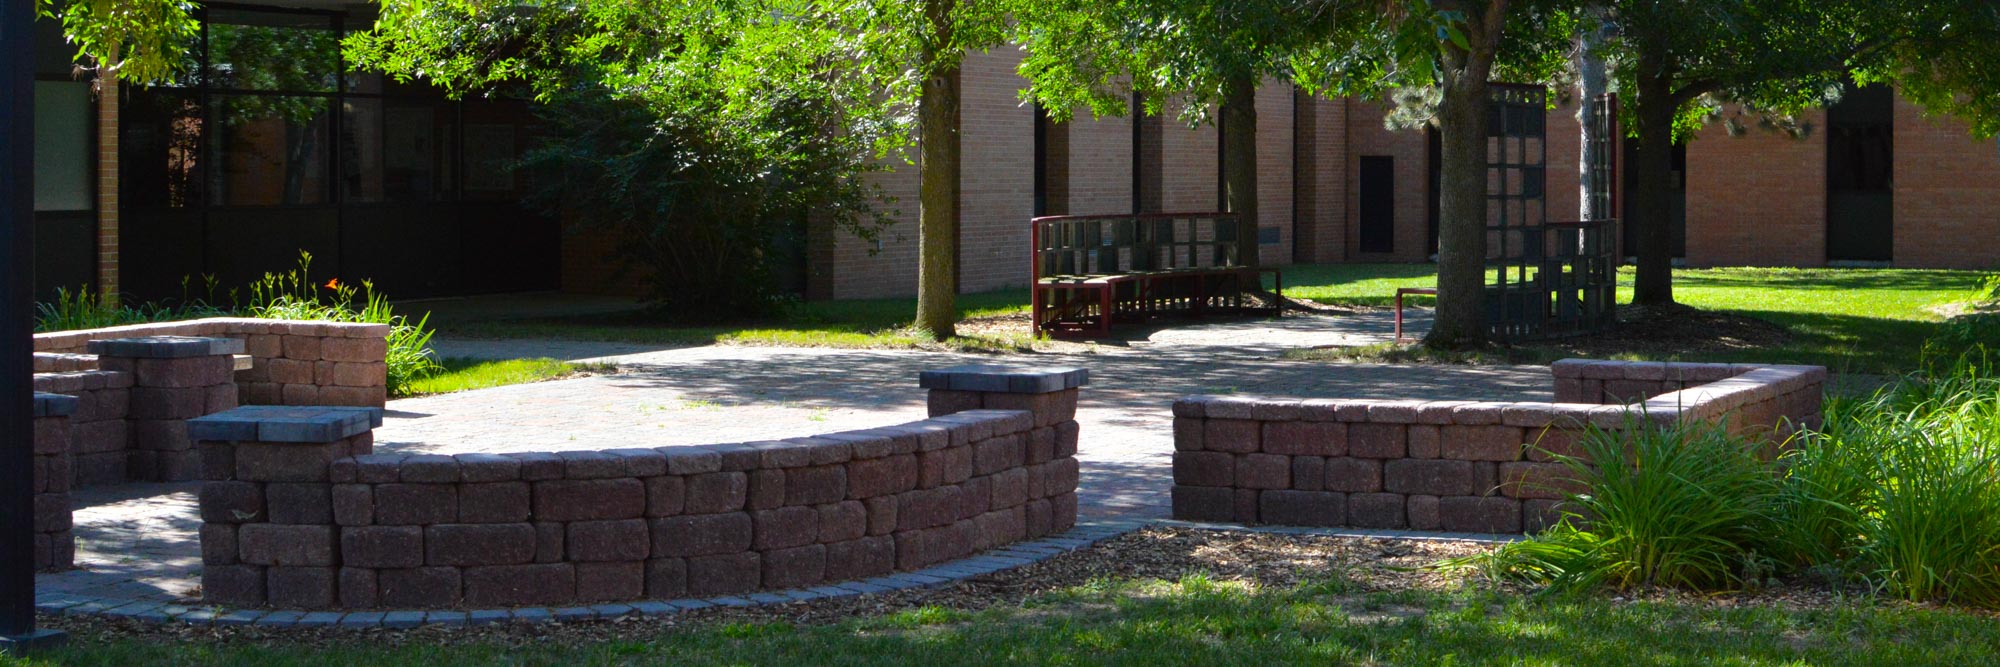 campus courtyard